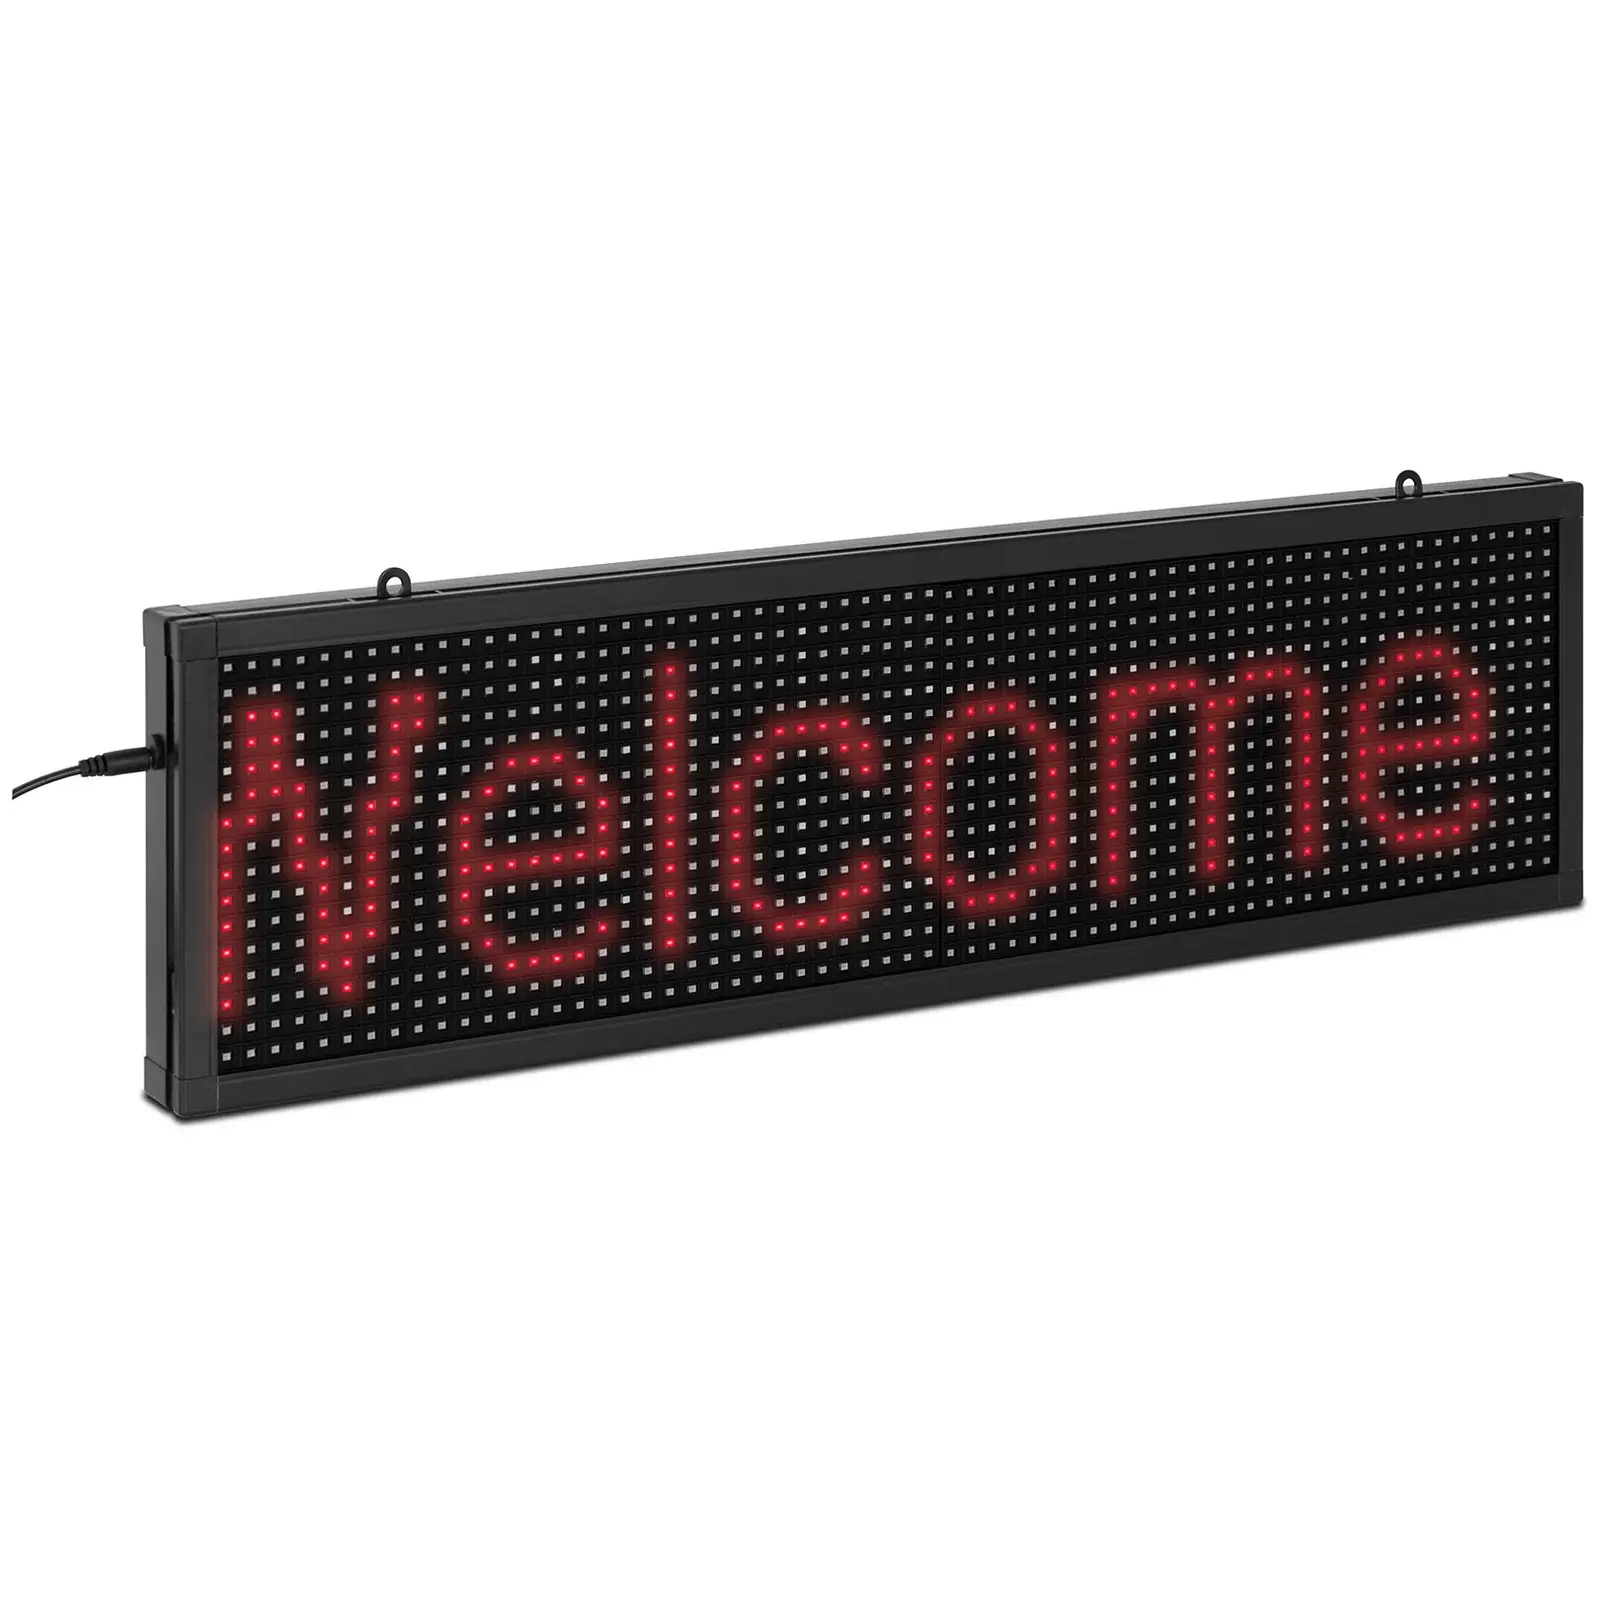 Panneau LED programmable - Affiche d'extérieur - Affichage publicitaire LED  - Affichage programmable